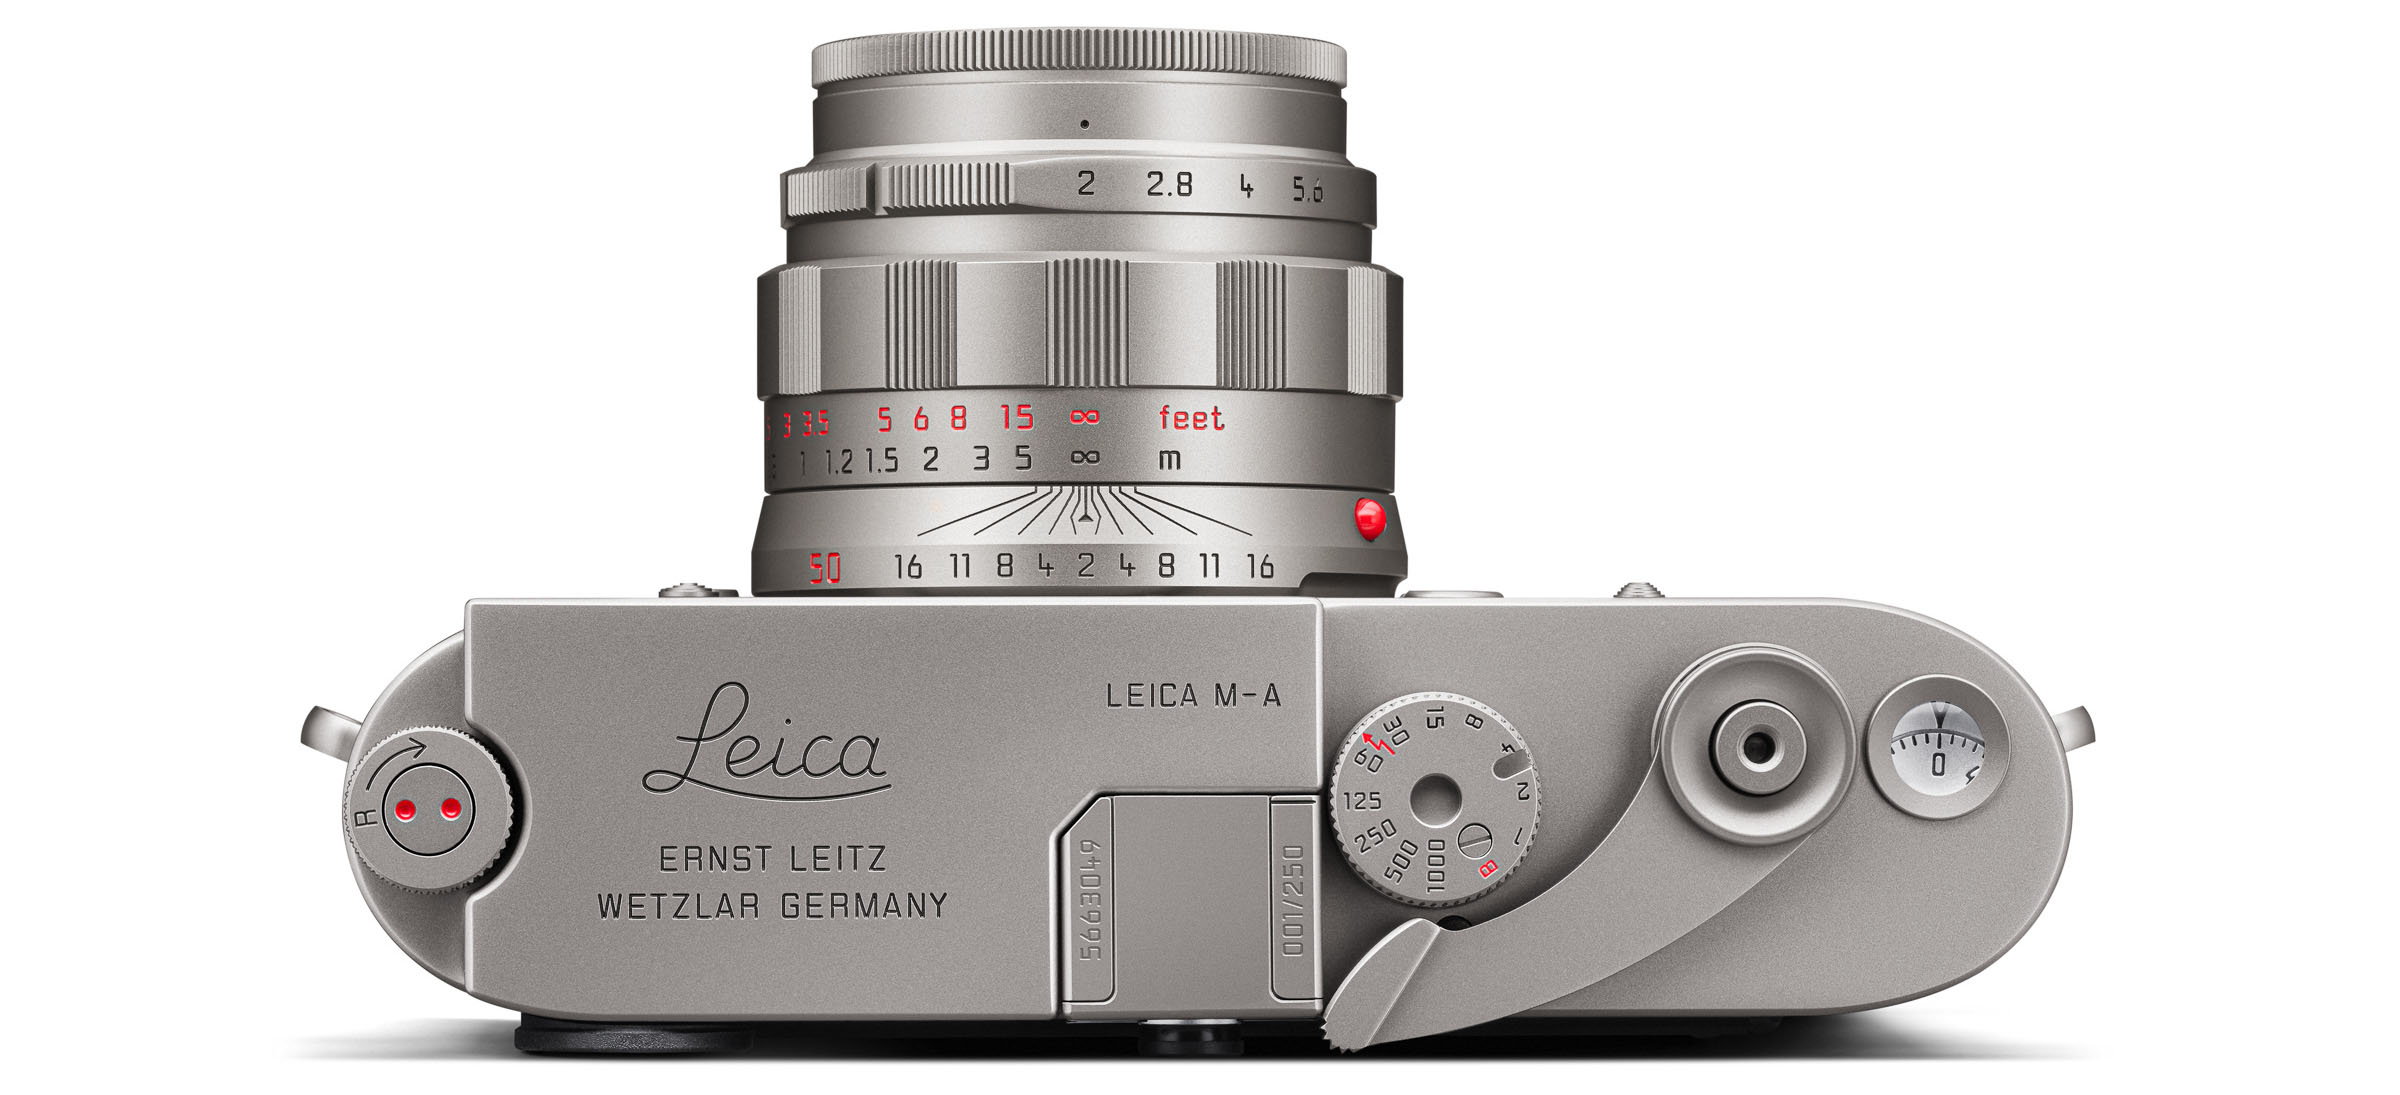 Leica ra mắt máy ảnh film thuần thủ công M-A "Titan" bán giới hạn chỉ 250 chiếc nhưng hết sạch chỉ trong vài tiếng